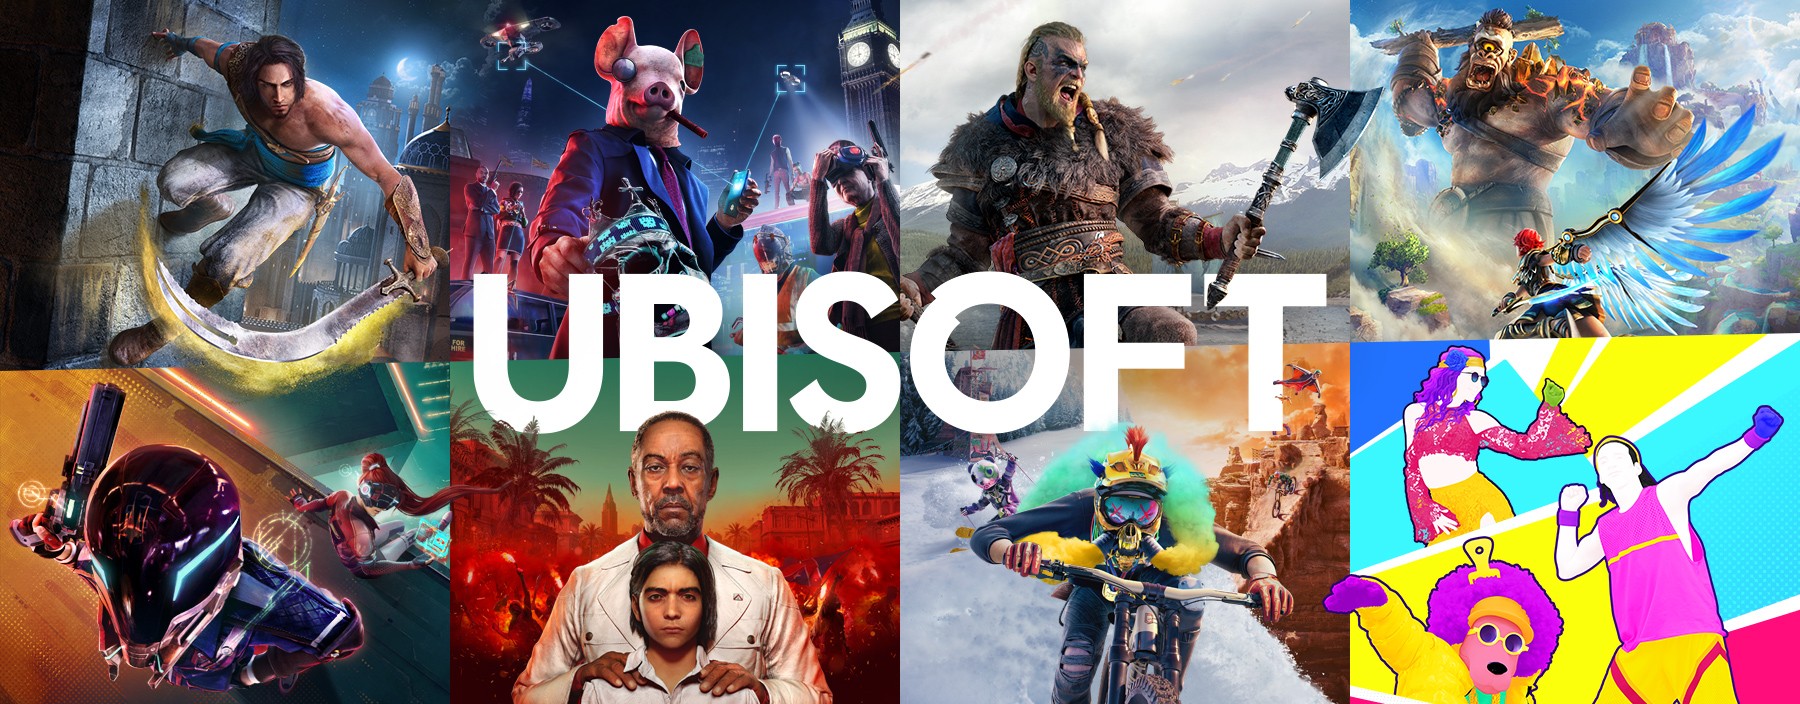 We wrześniu Ubisoft ponownie wyłączy serwery Assassin Creed II, Far Cry 3 i inne gry